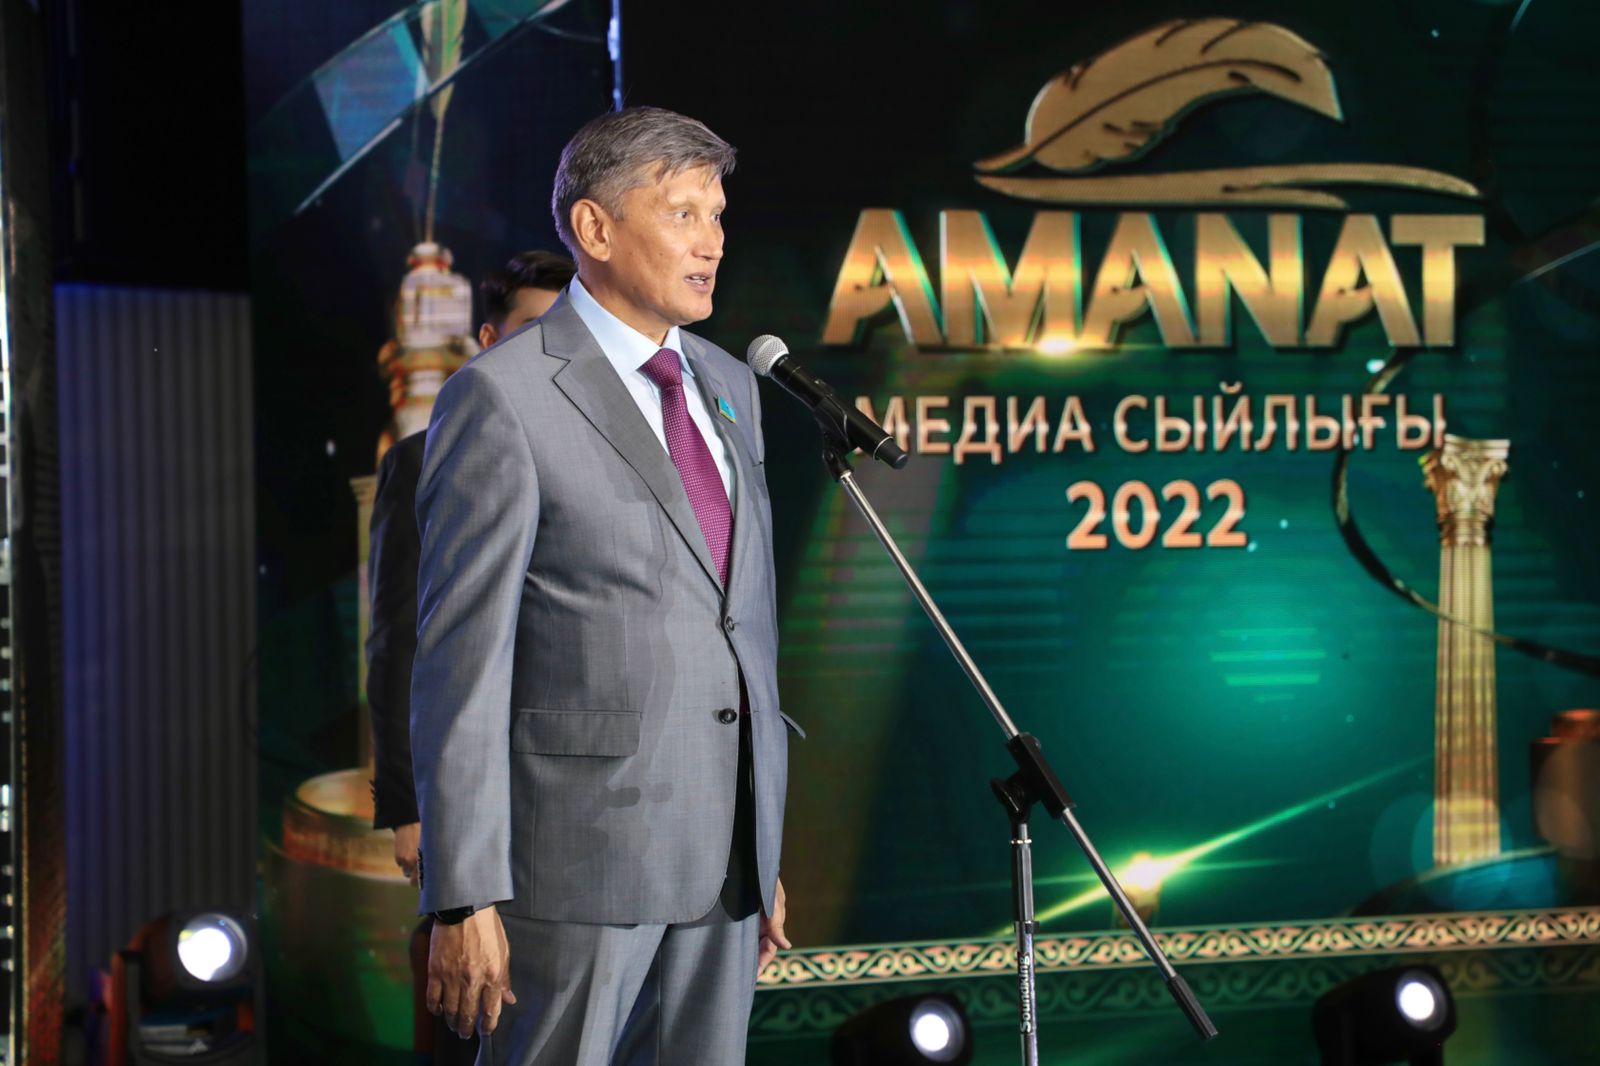 «AMANAT» – 2022 медиа сыйлығының жеңімпаздары анықталды